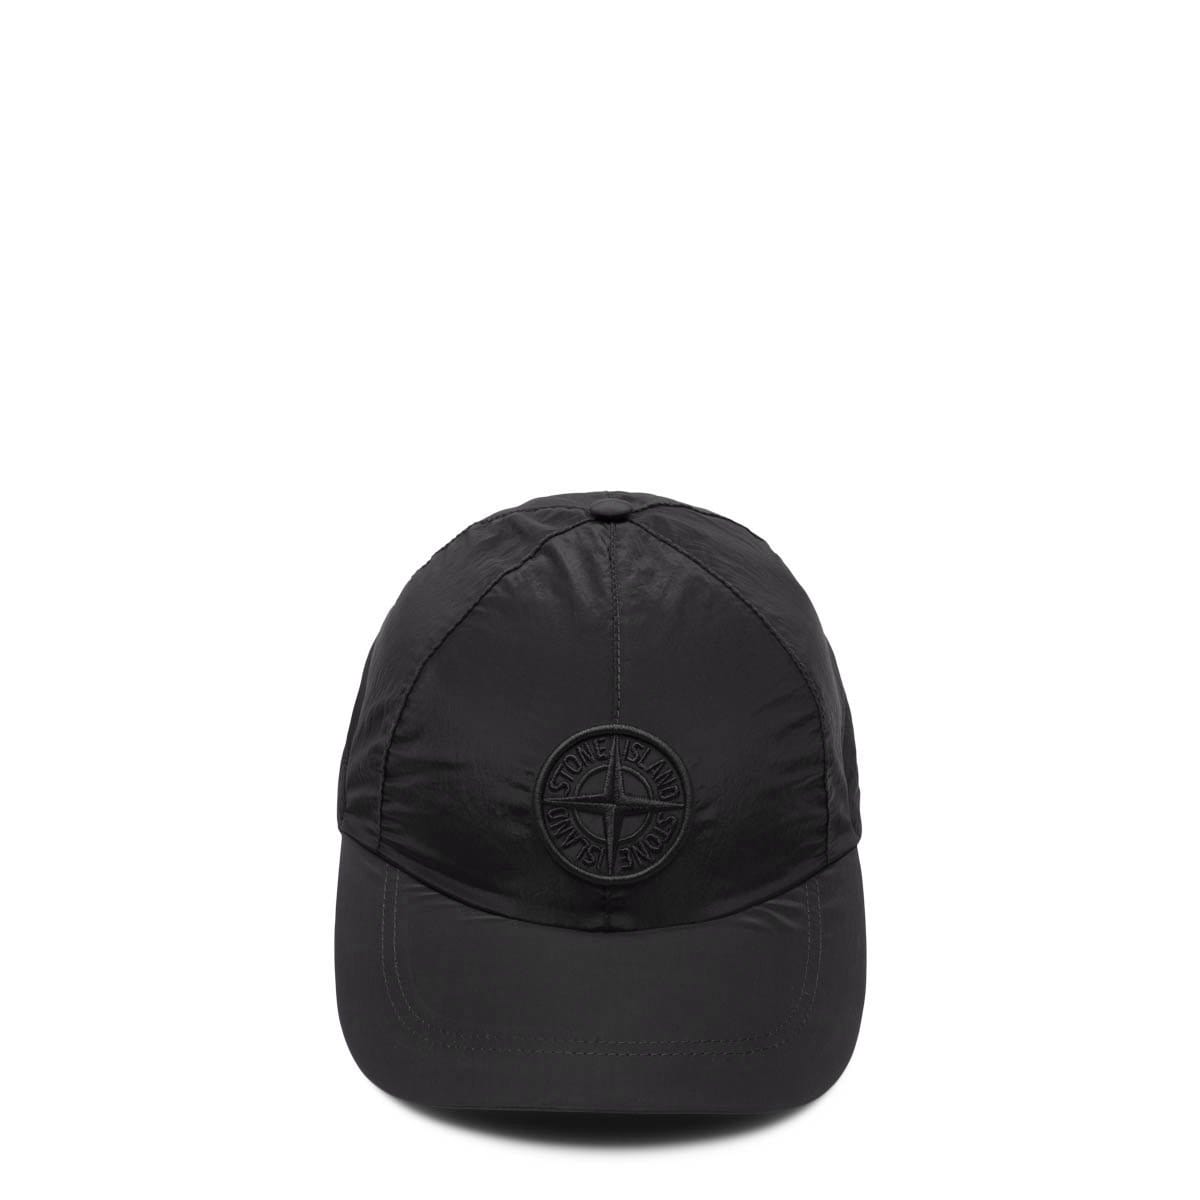 Stone Island Headwear HAT 751599576